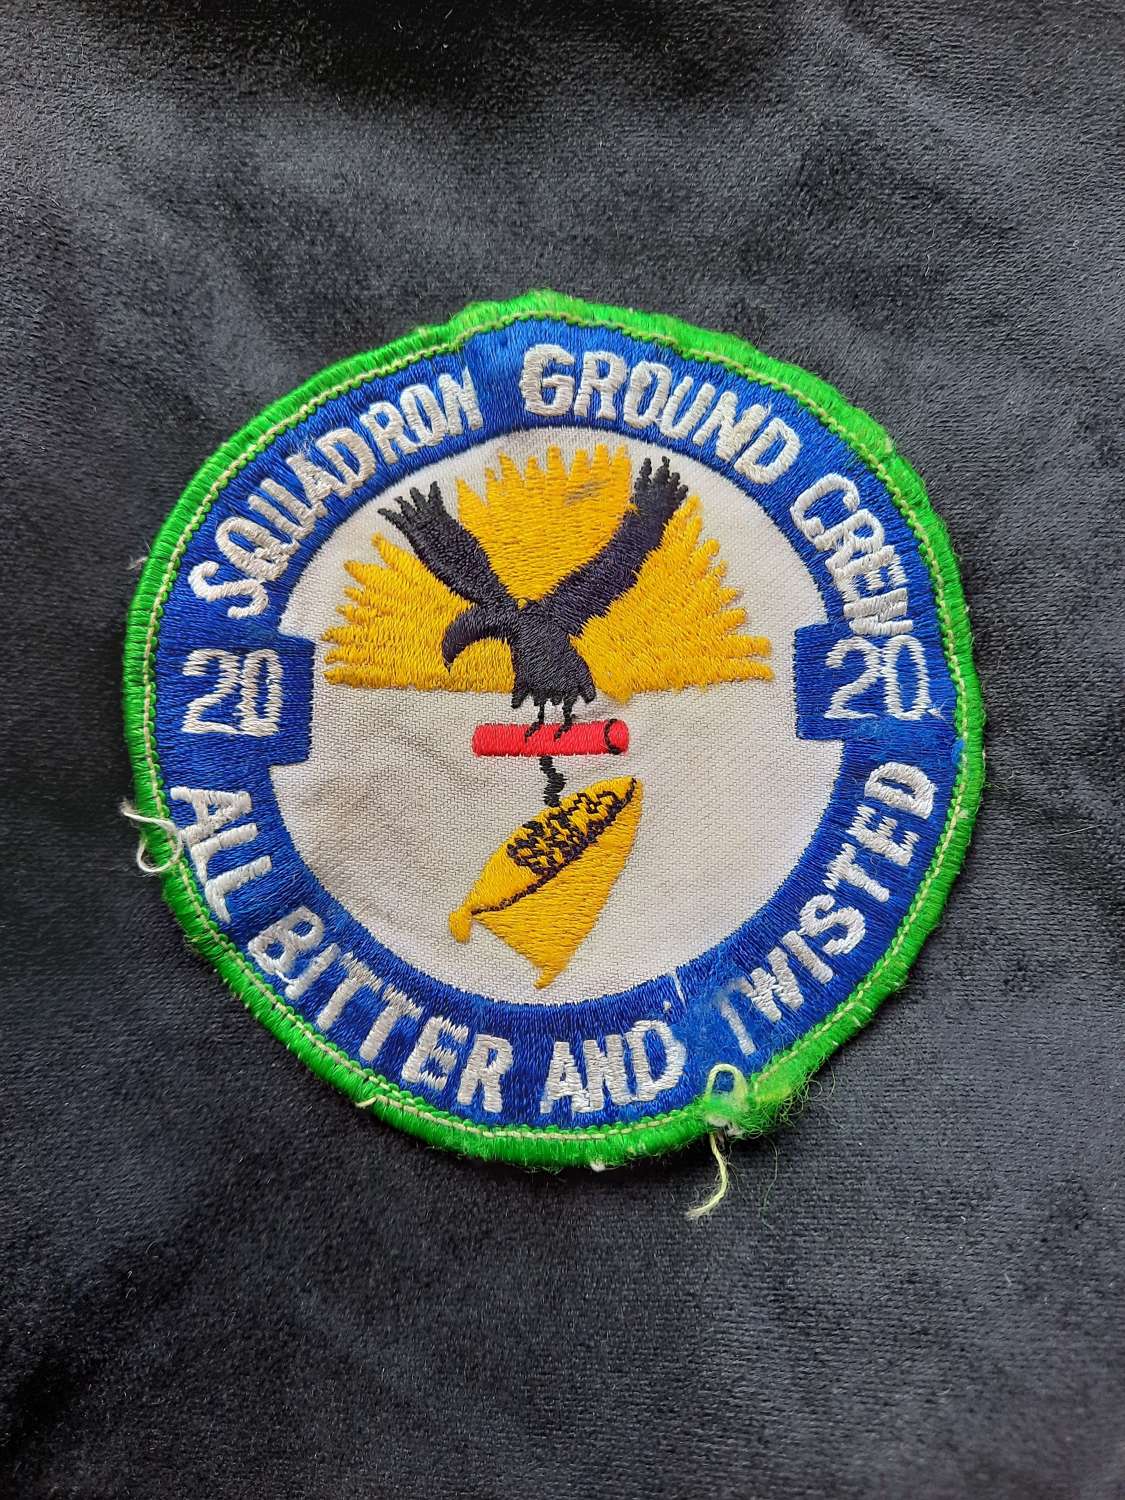 20 ground crew squadron